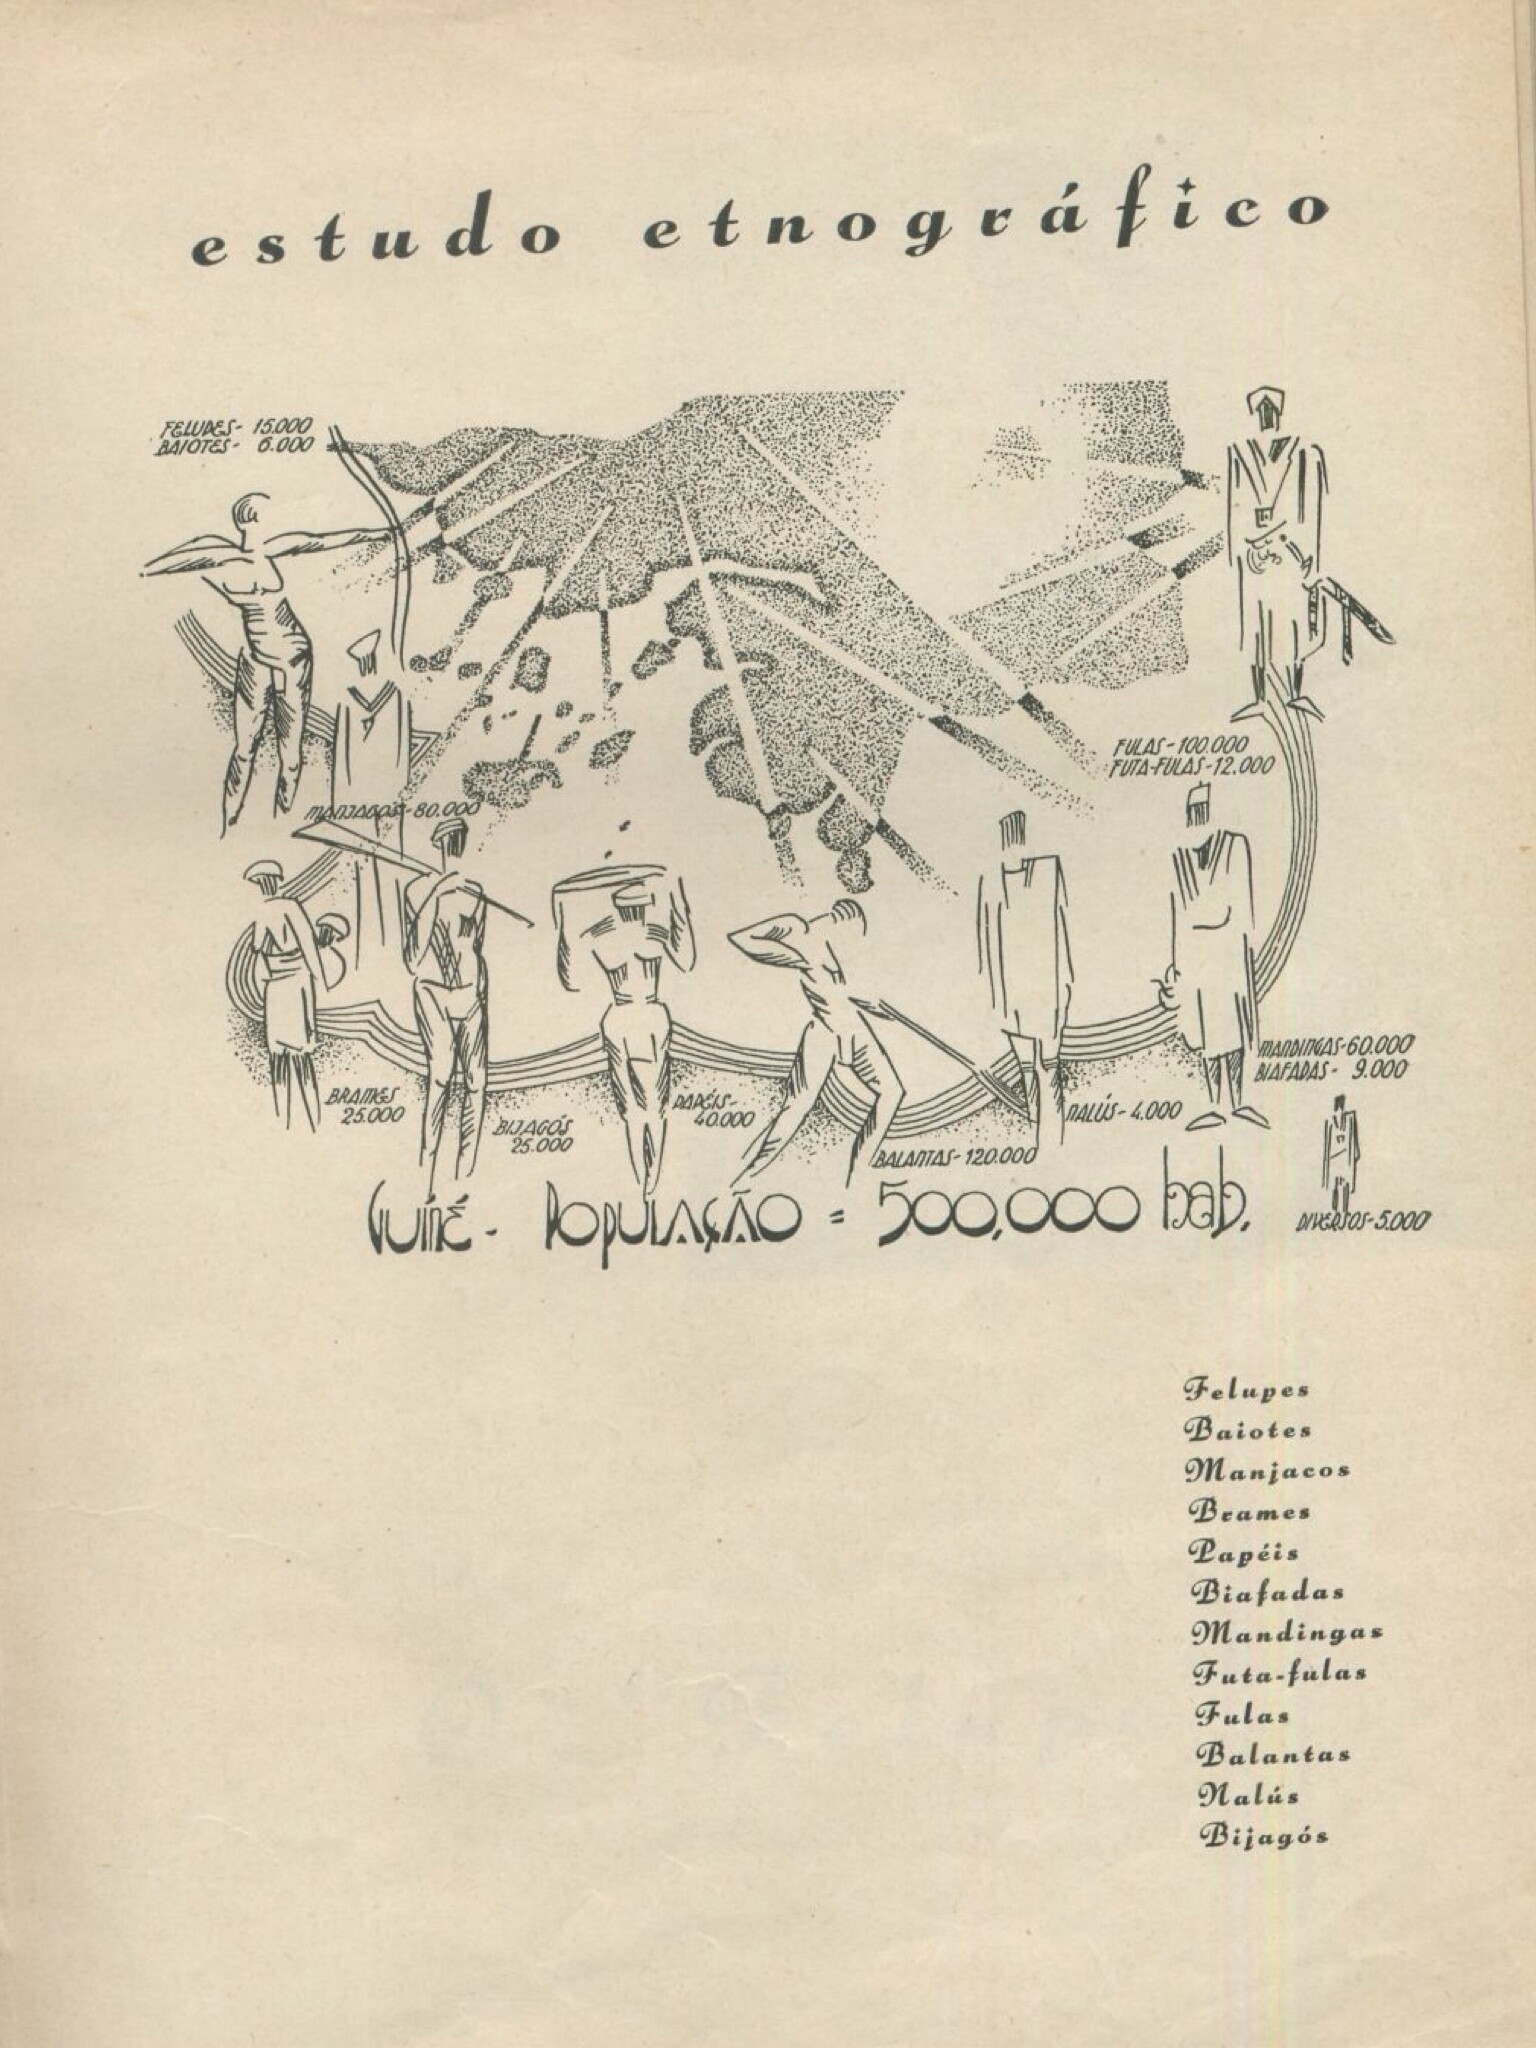 Landerset Simões, Norton de Mattos (pref.), Babel Negra: etnografia, arte e cultura dos indígenas da Guiné, [Porto], [Of. Gráficas d’ «O Comércio do Porto»], [1935], p. 25.